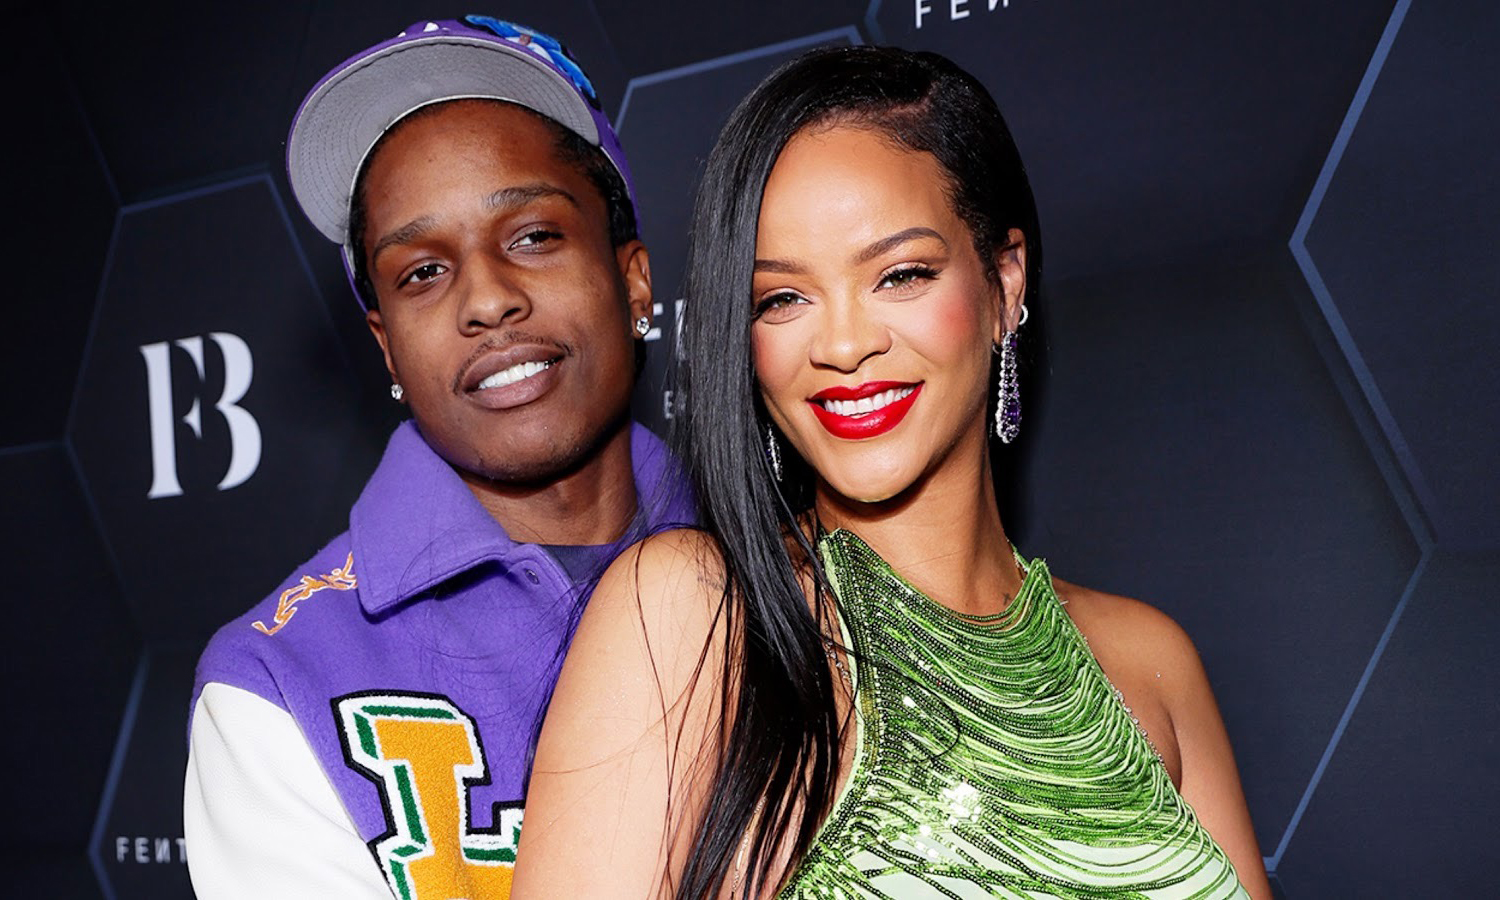 消息人士爆料 Rihanna 与 A$AP Rocky 已经分手